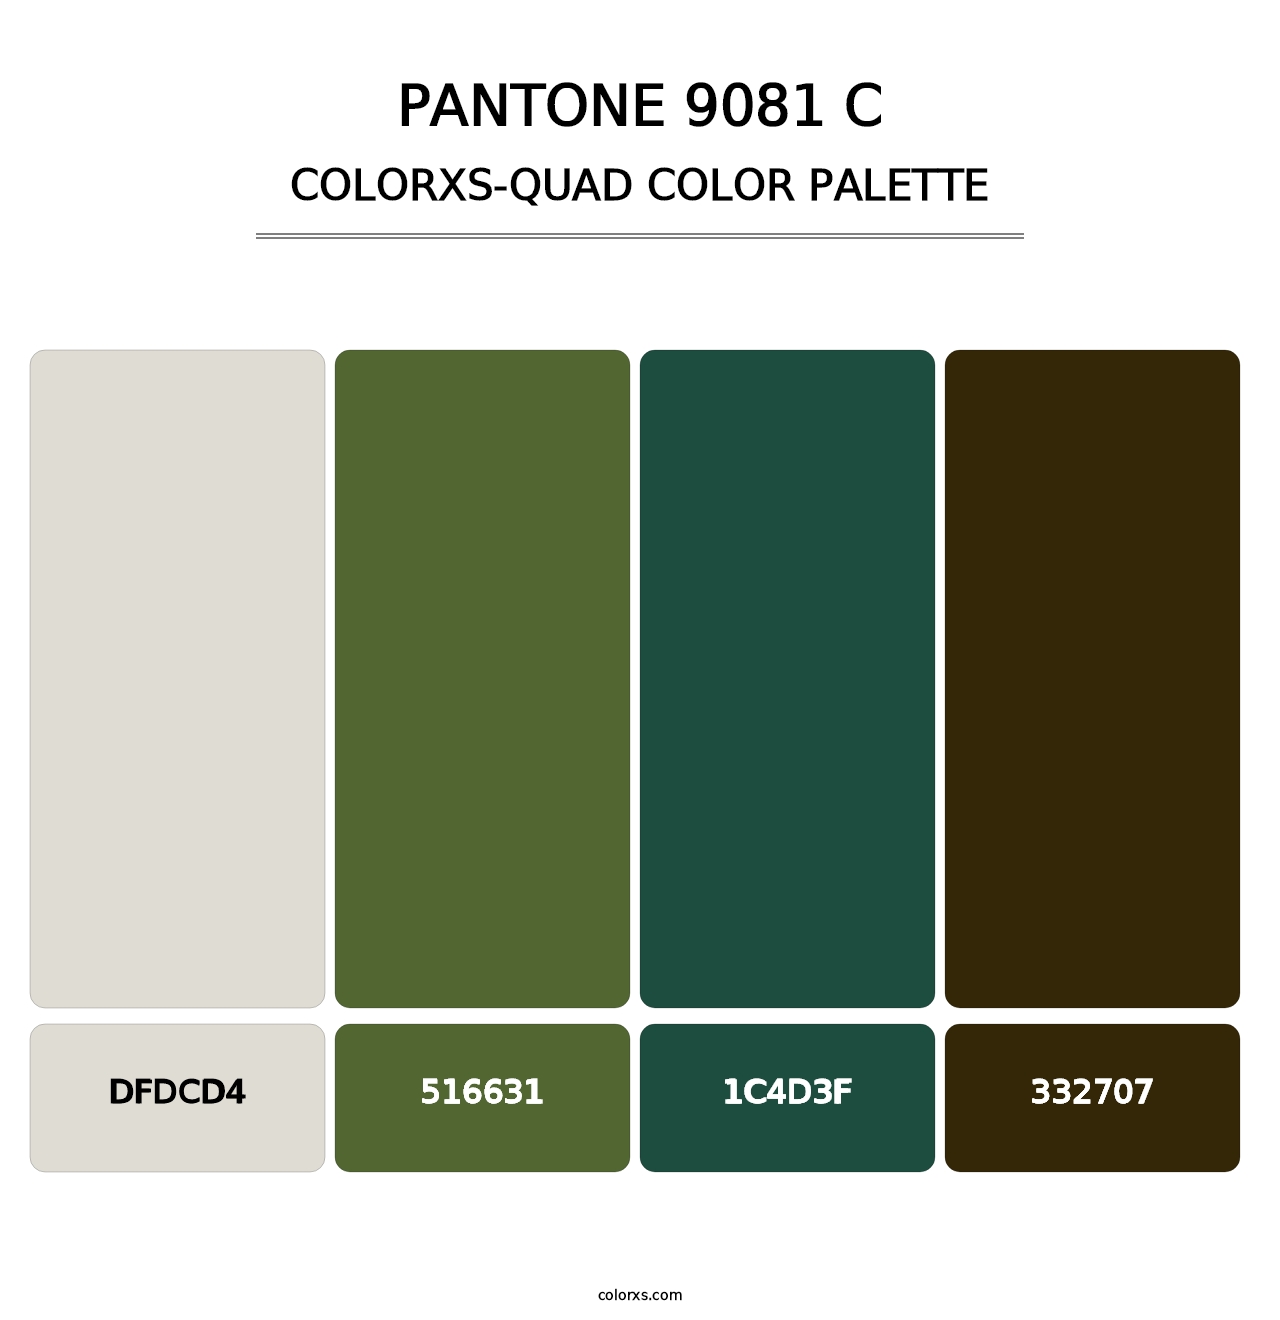 PANTONE 9081 C - Colorxs Quad Palette